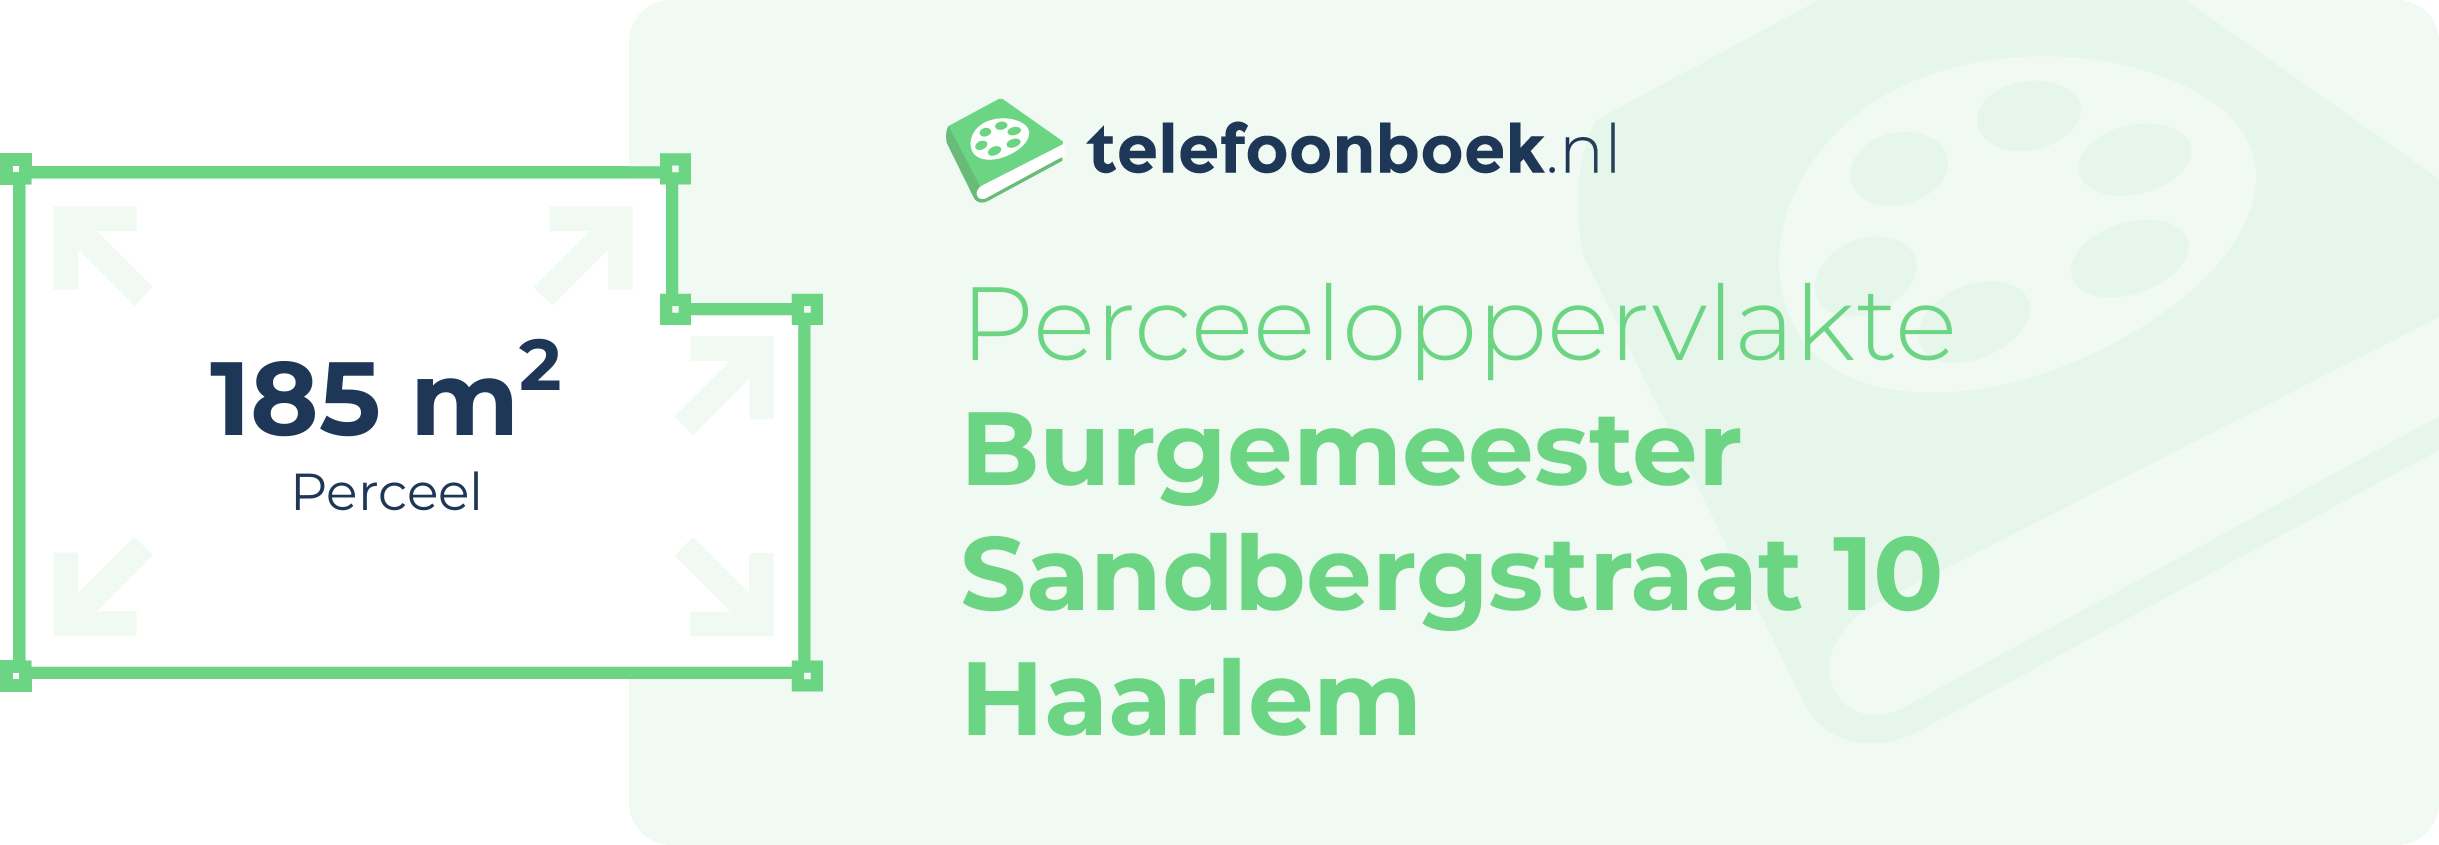 Perceeloppervlakte Burgemeester Sandbergstraat 10 Haarlem